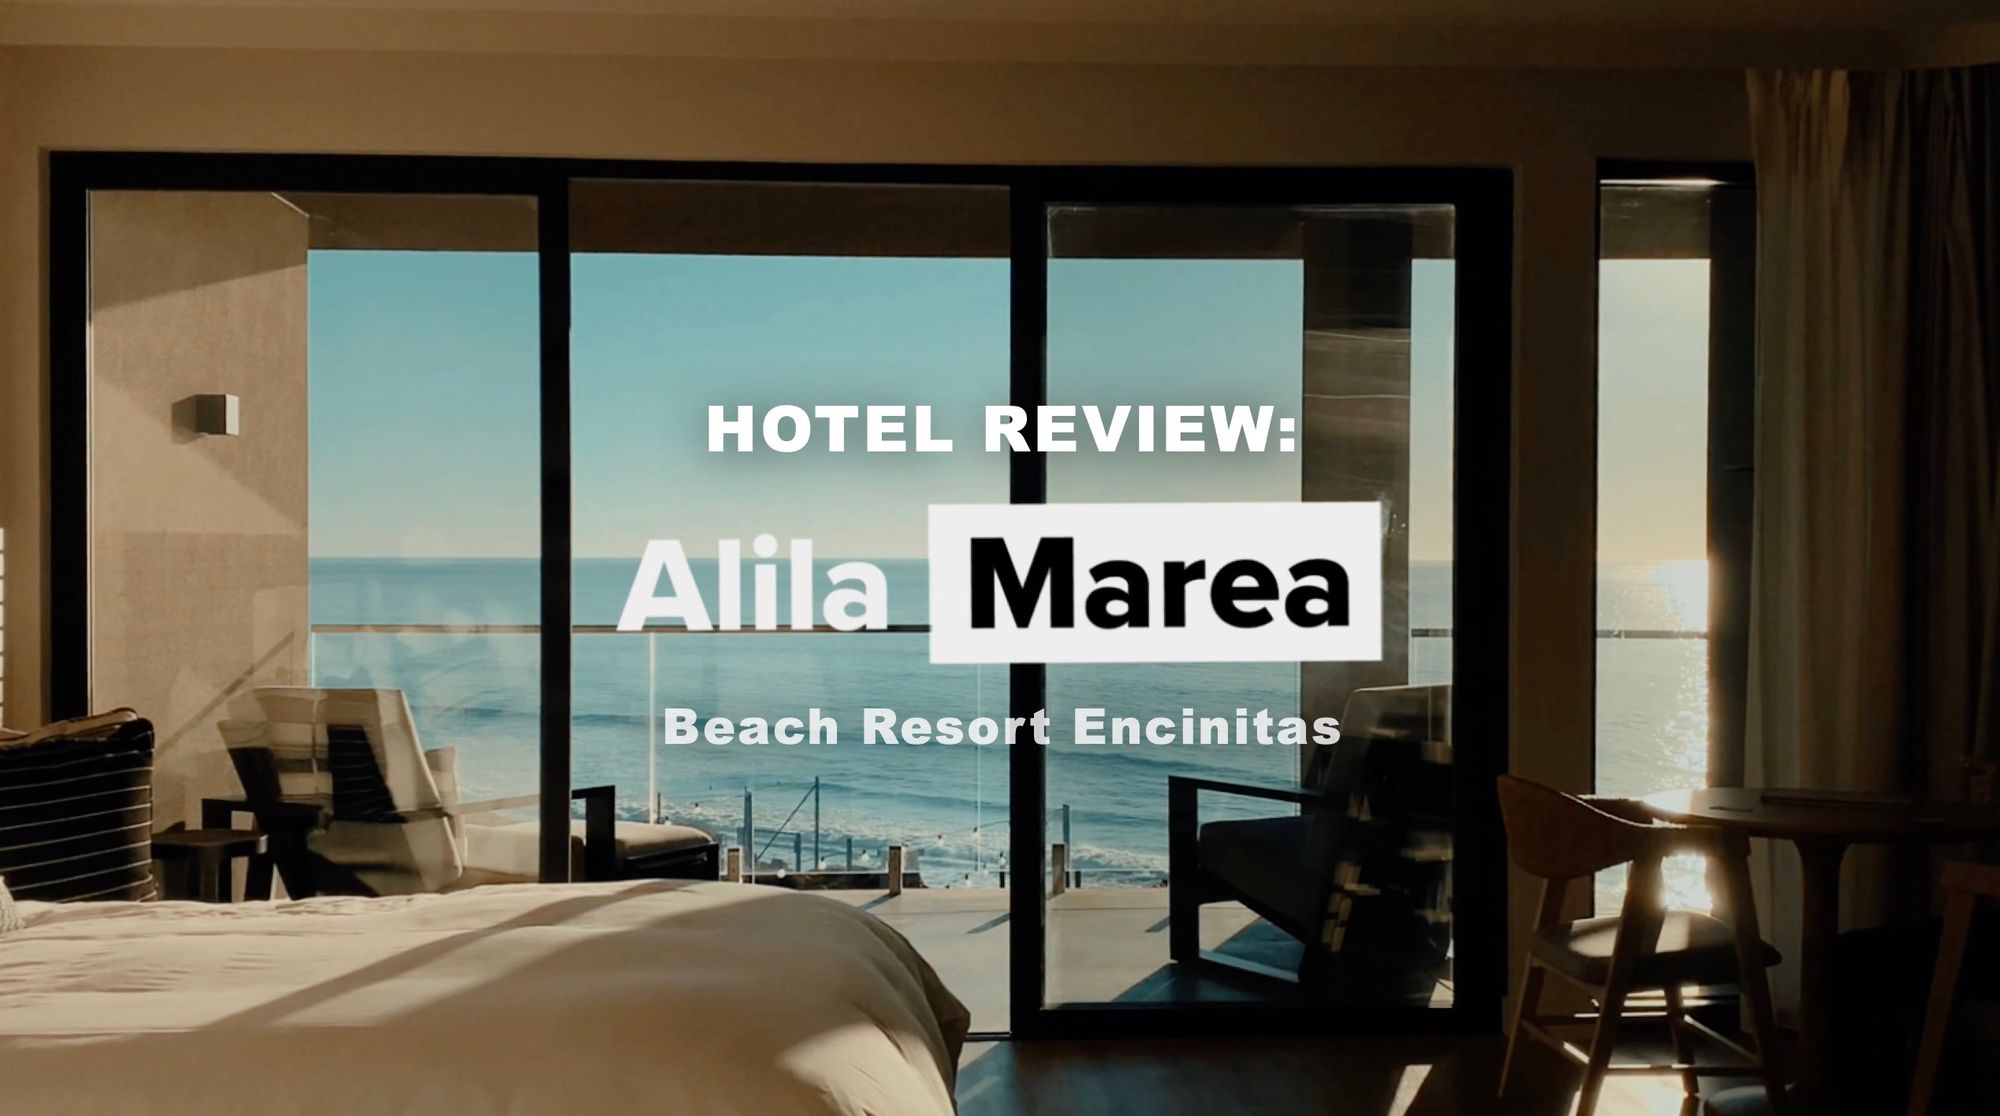 Review: Alila Marea Beach Resort Encinitas